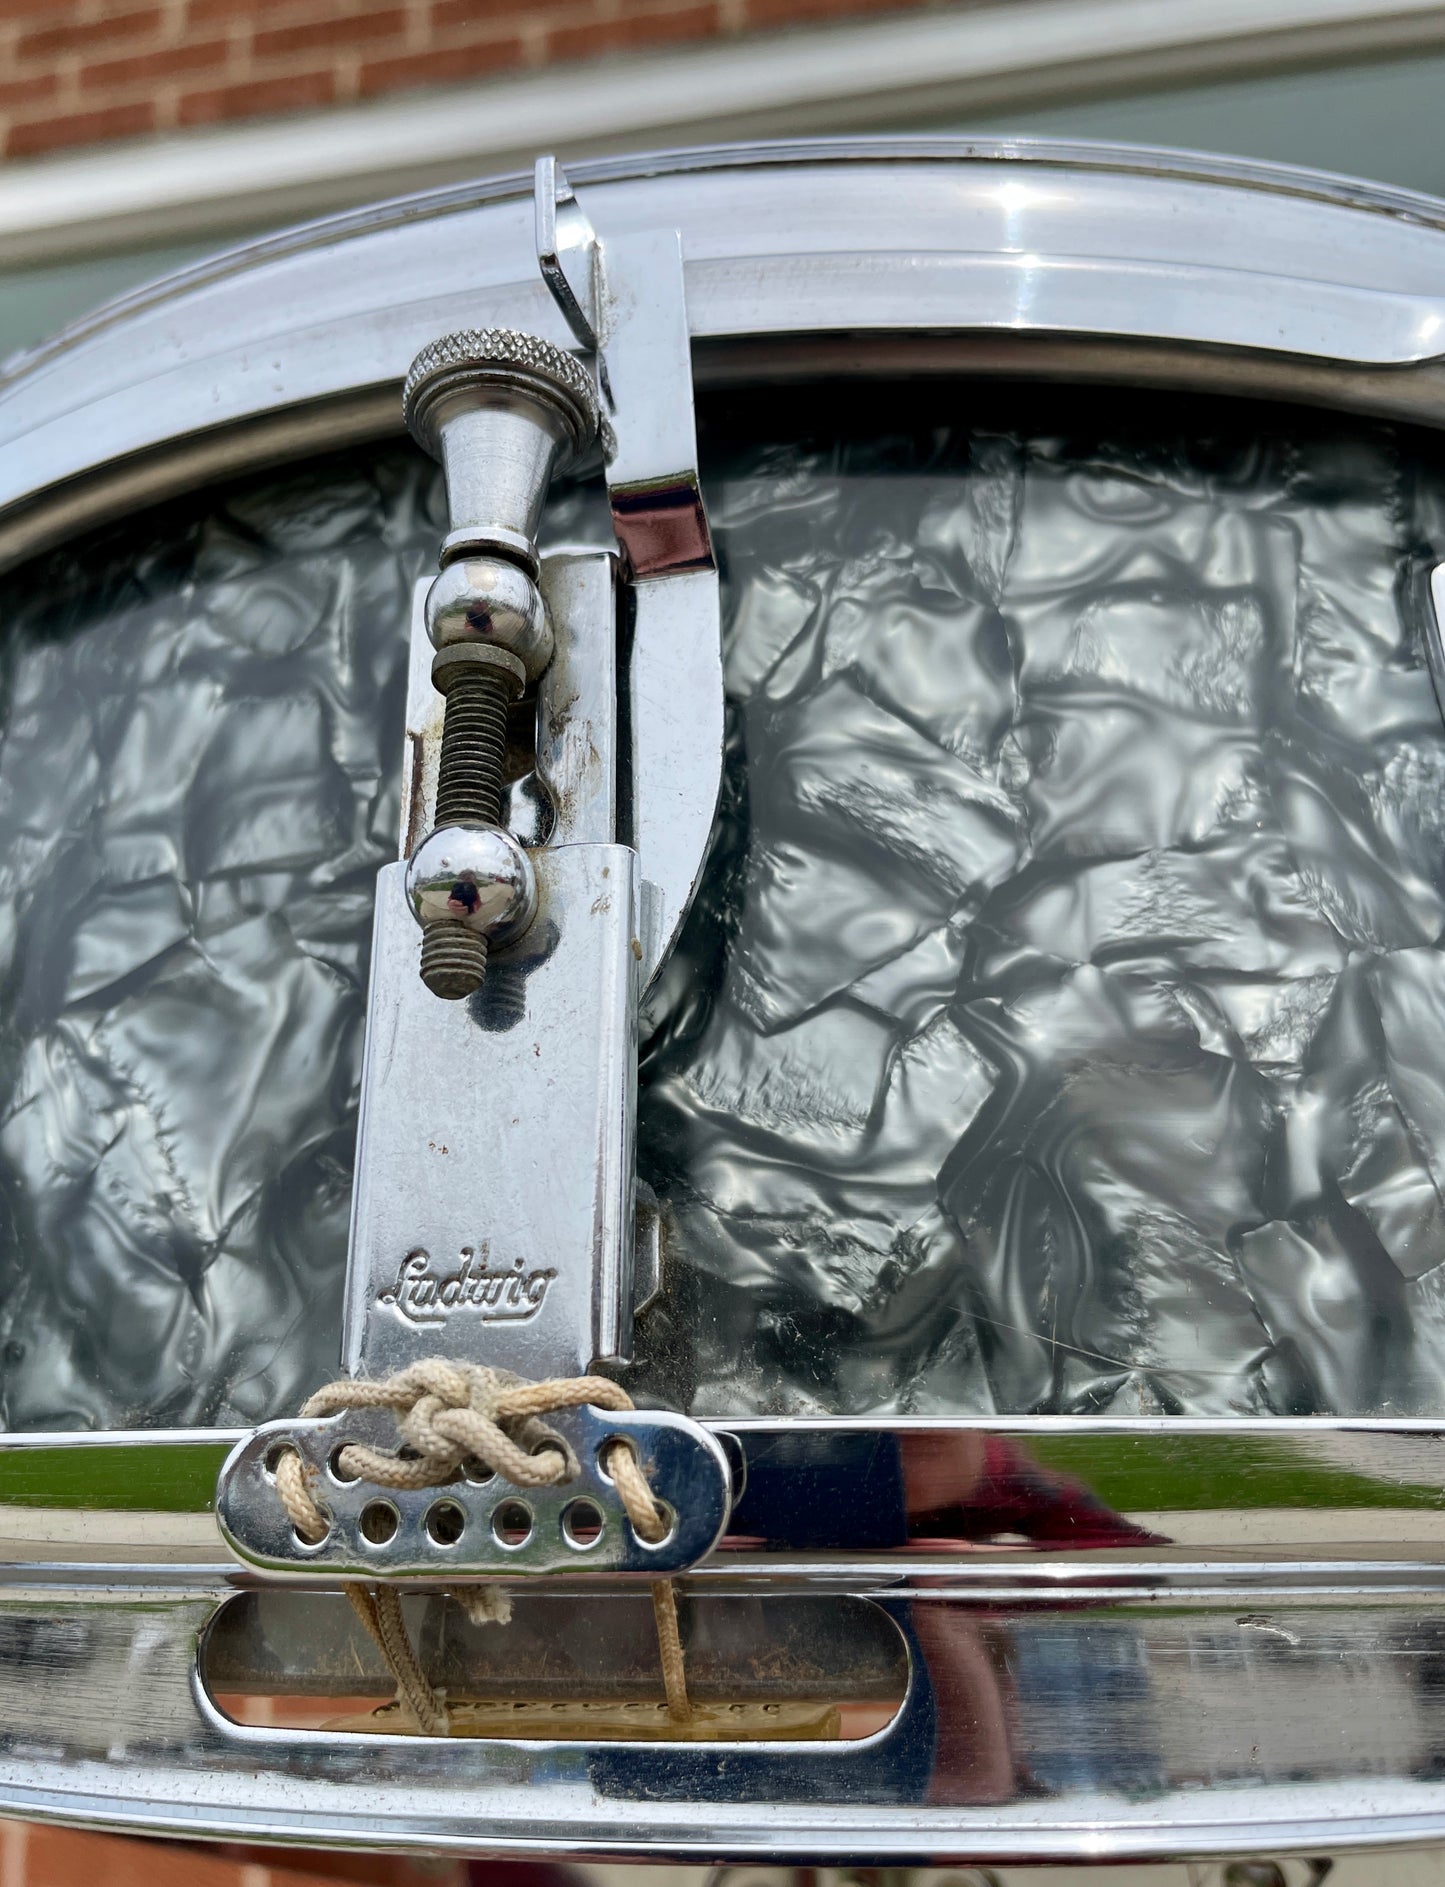 1966 Ludwig 5x14 Pioneer Snare Drum Black Diamond Pearl